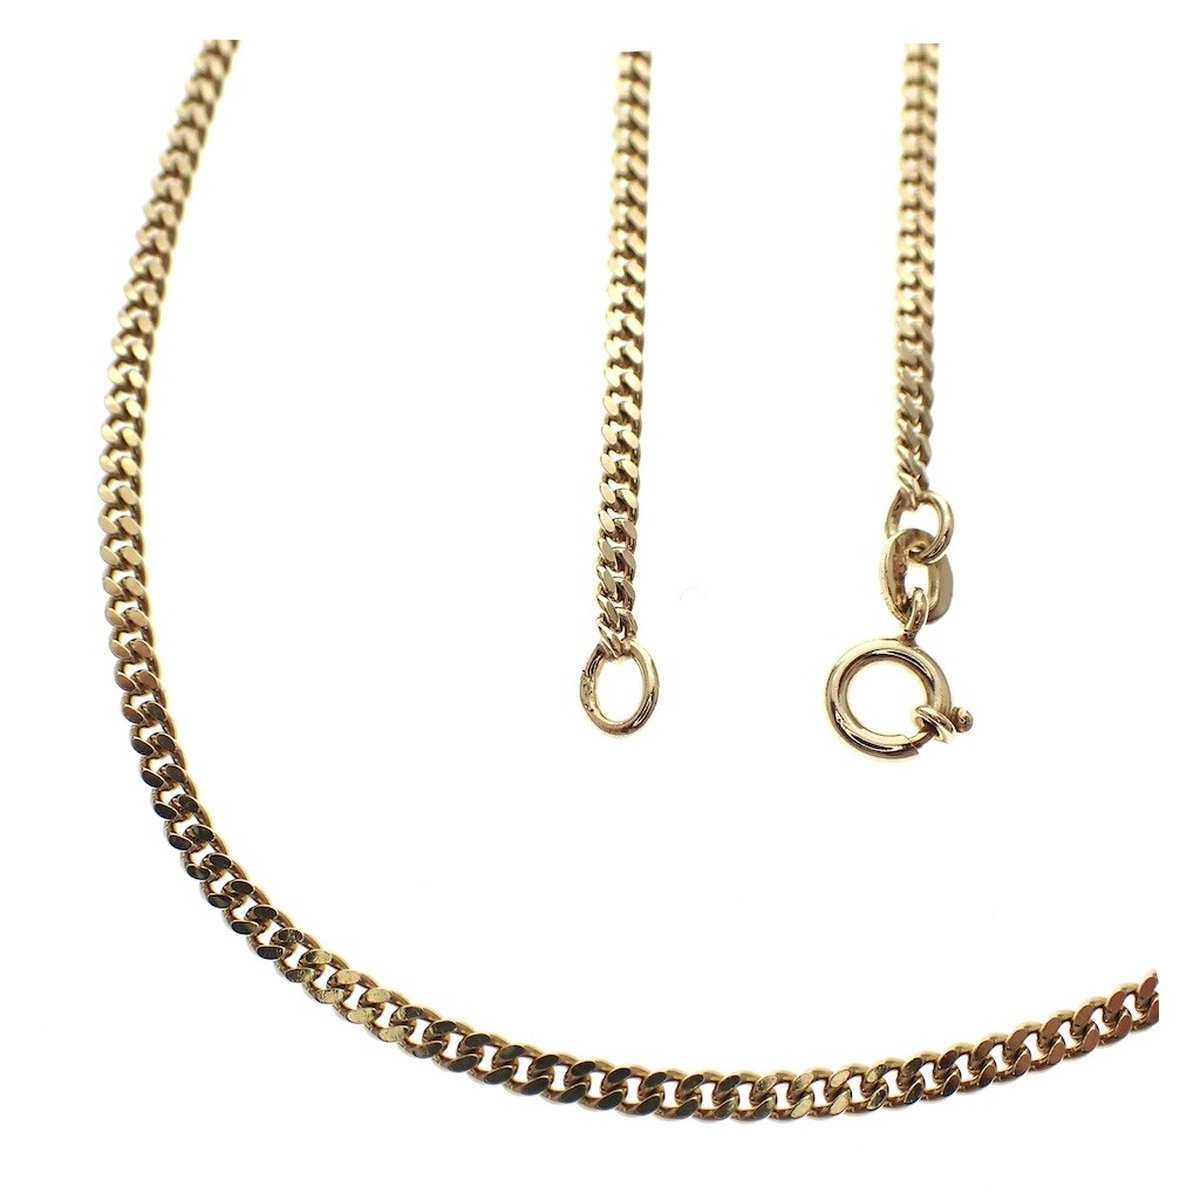 Ketting - gourmet - geel goud - 60 cm - 2.9 gram - 1.2 mm breed - 14 karaat - Verlinden juwelier - Verlinden Juwelier